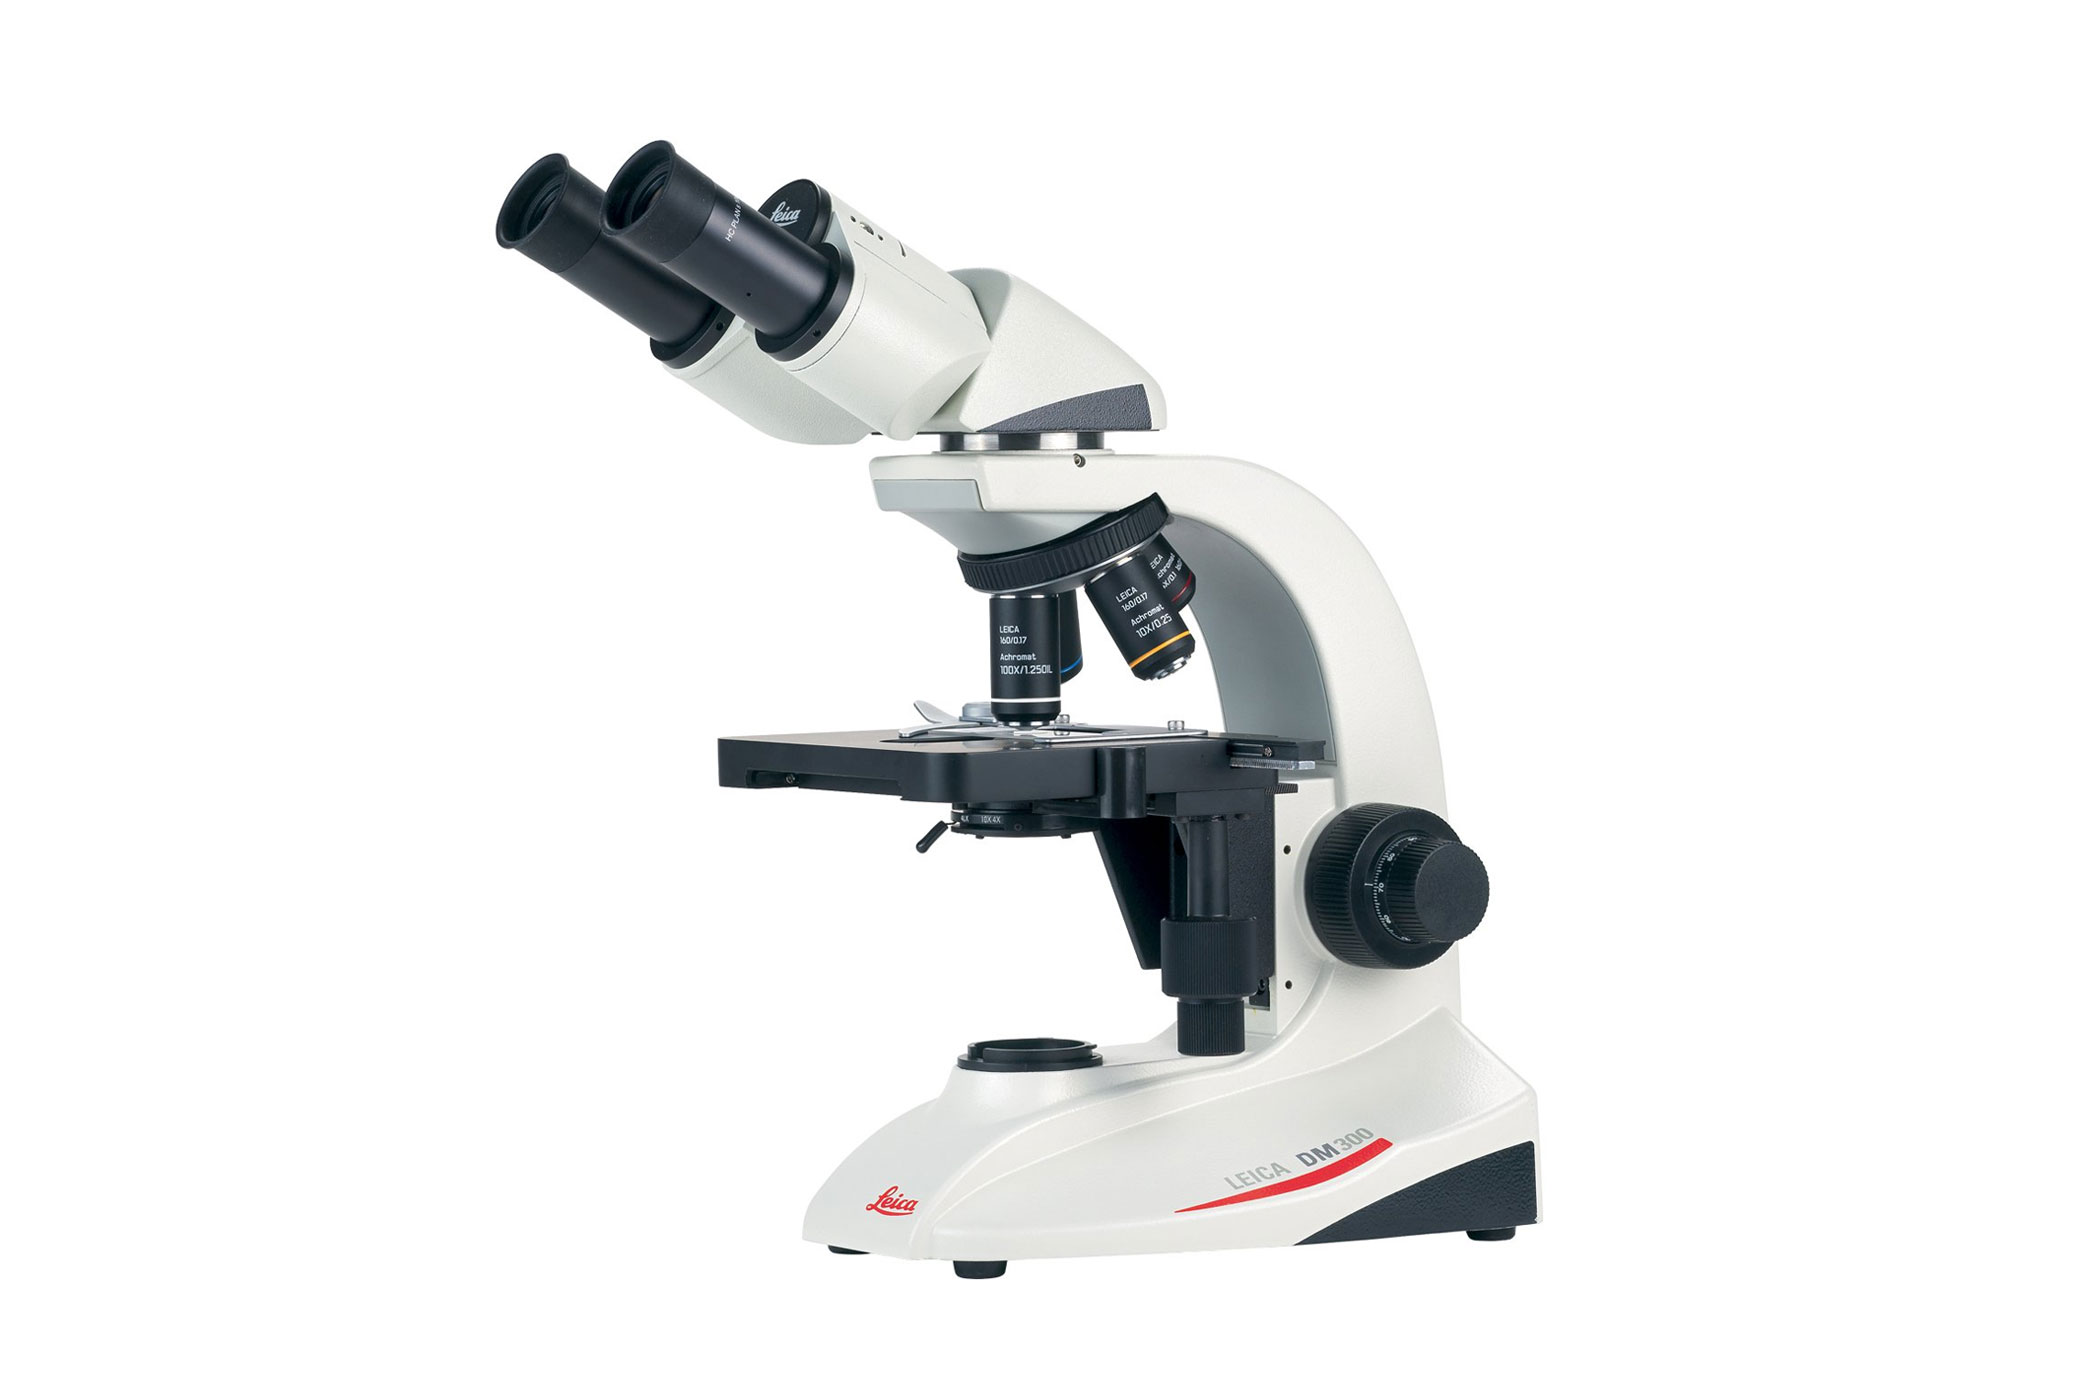 Robusto microscopio per studenti